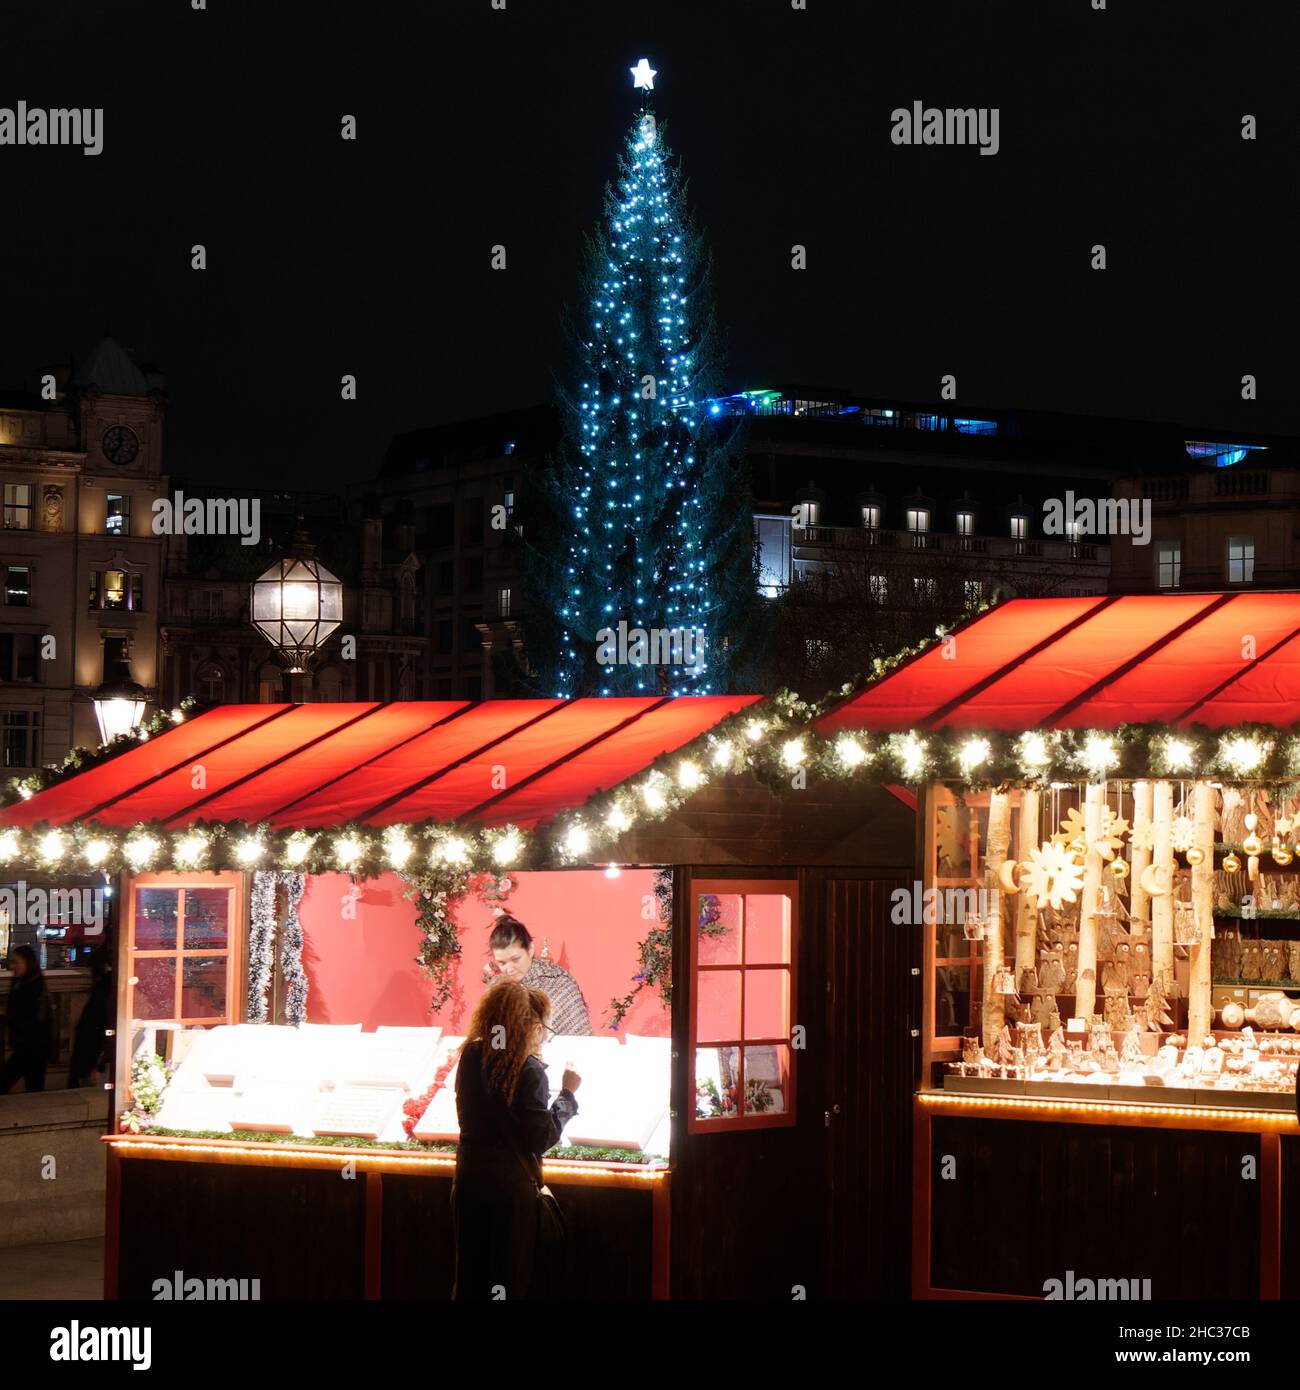 Londres, Grand Londres, Angleterre, décembre 15 2021 : personnes fréquentant un marché de Noël à Trafalgar Square avec l'arbre de Noël offert de Norvège Banque D'Images